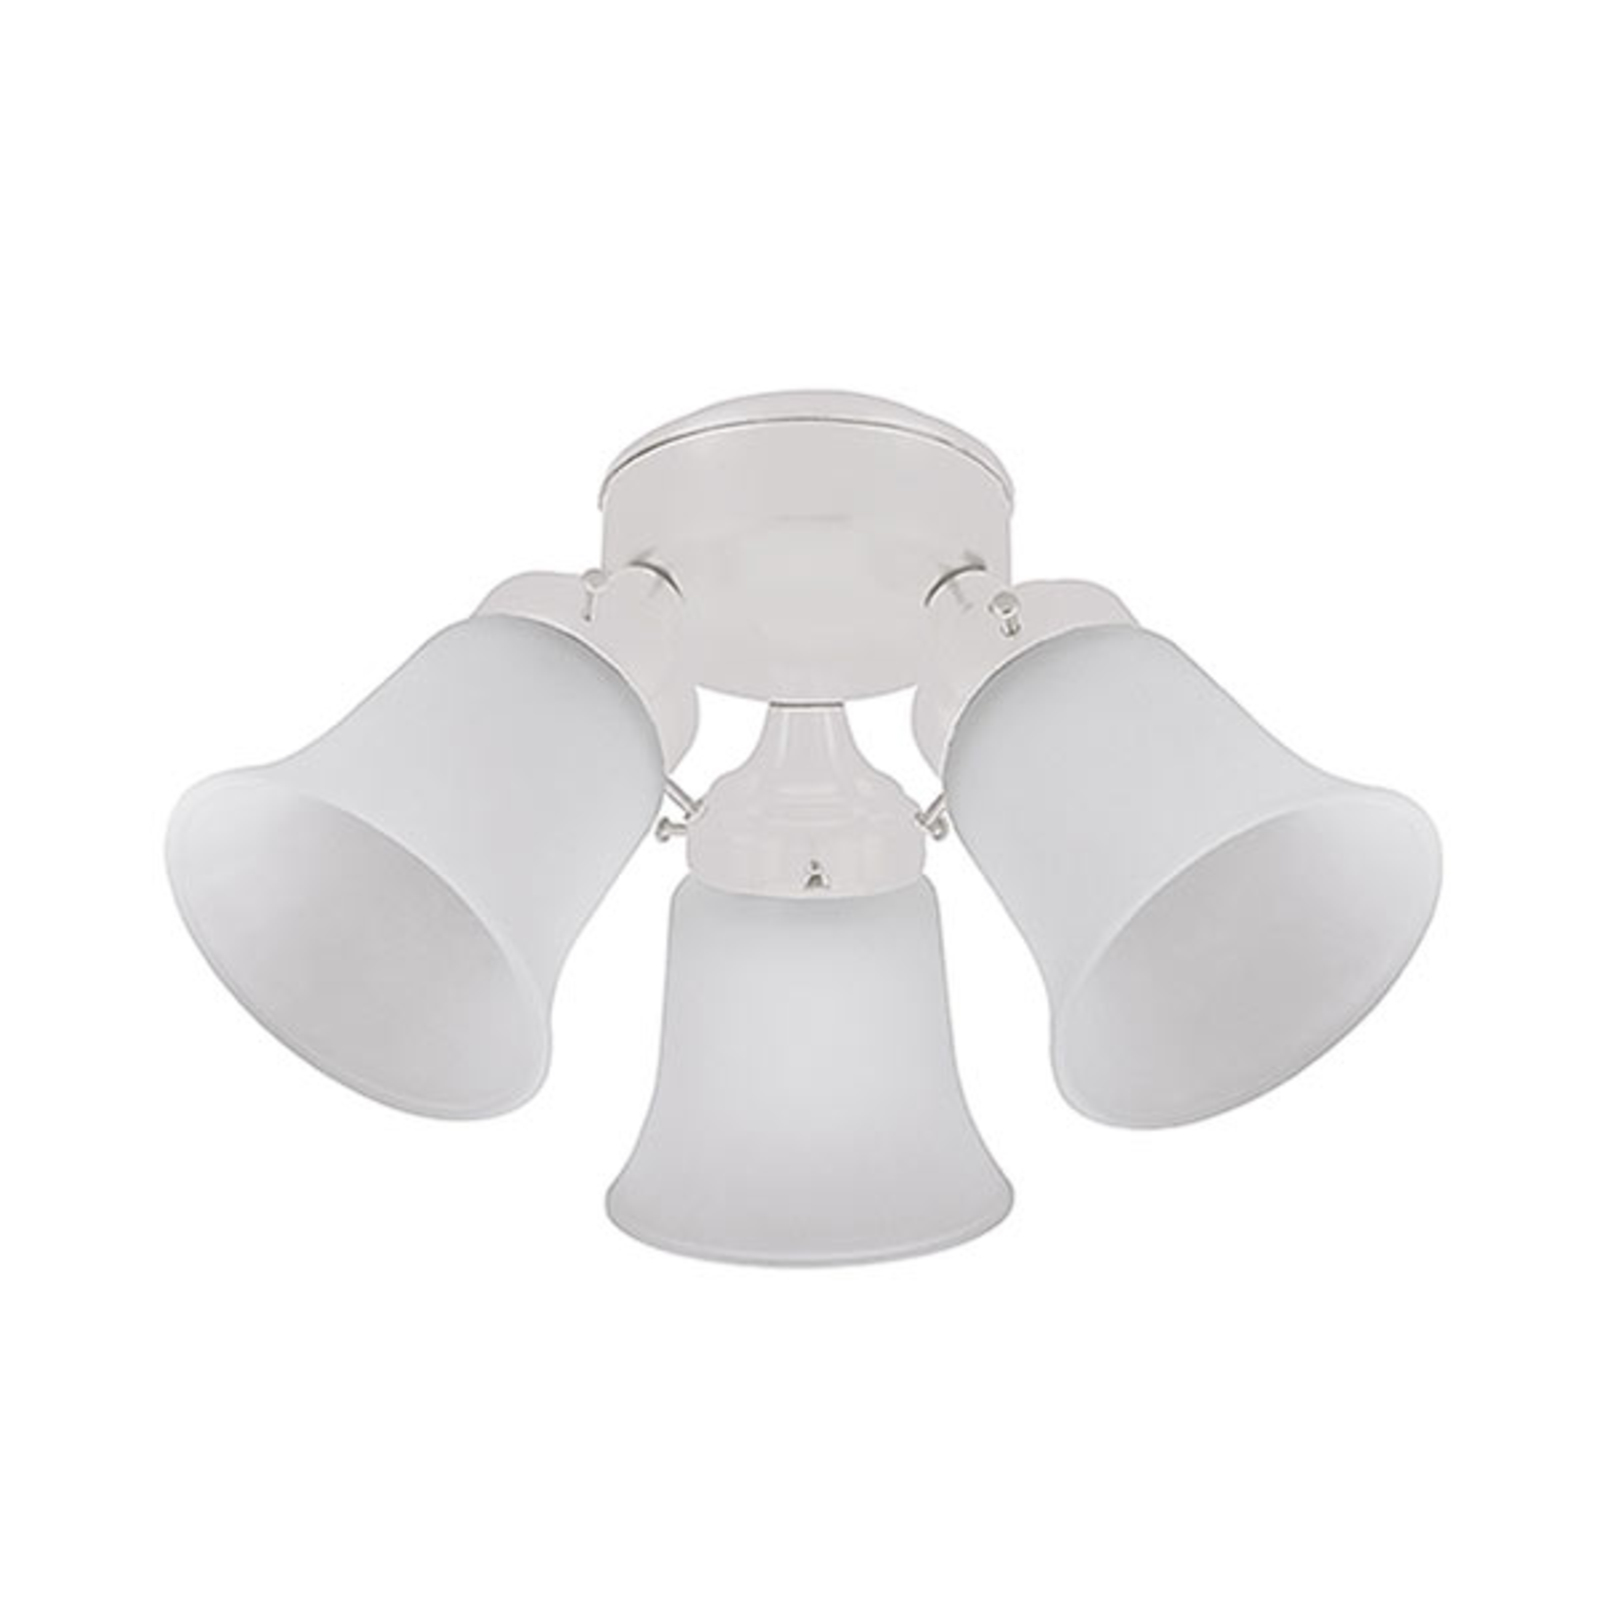 Light for Hunter ceiling fans, white